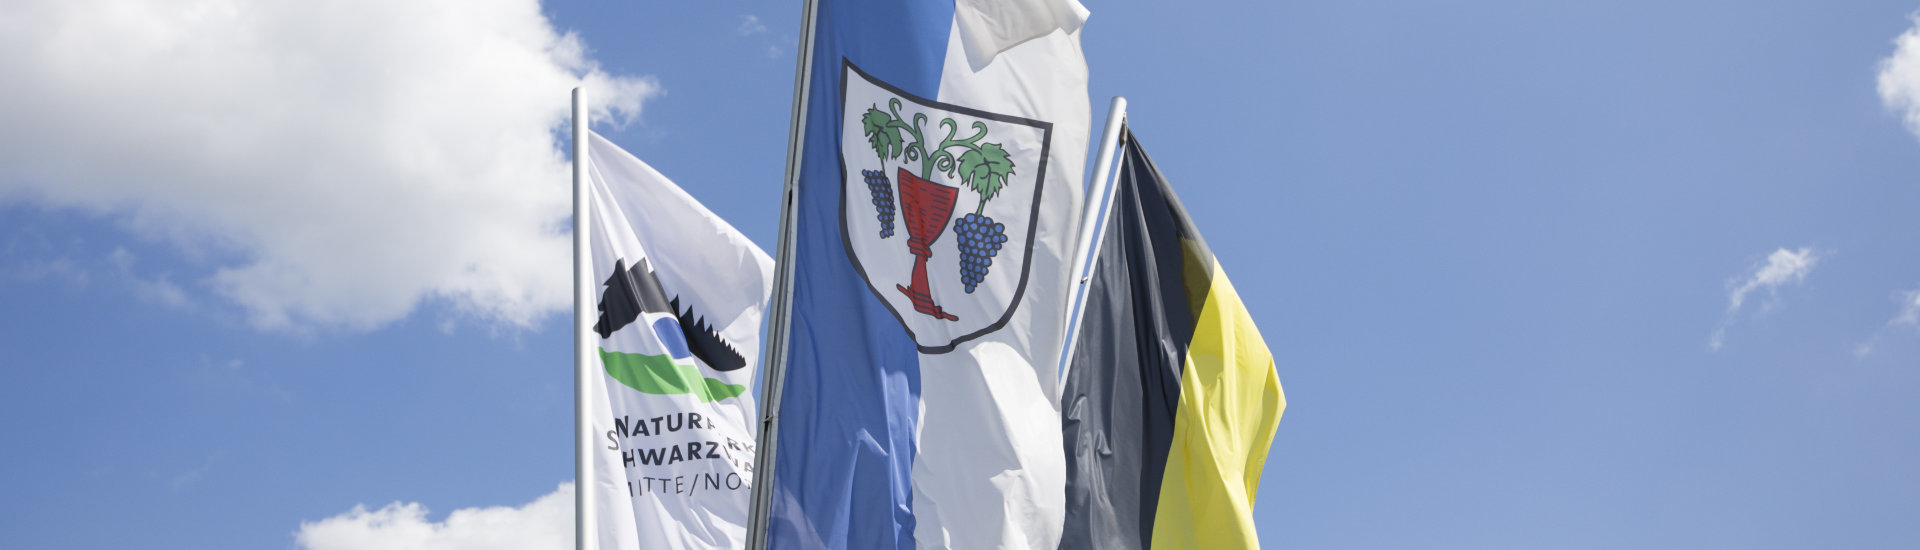 Foto: Flaggenmast mit dem Laufer Wappen und dem Naturpark Schwarzwald Mitte/Nord